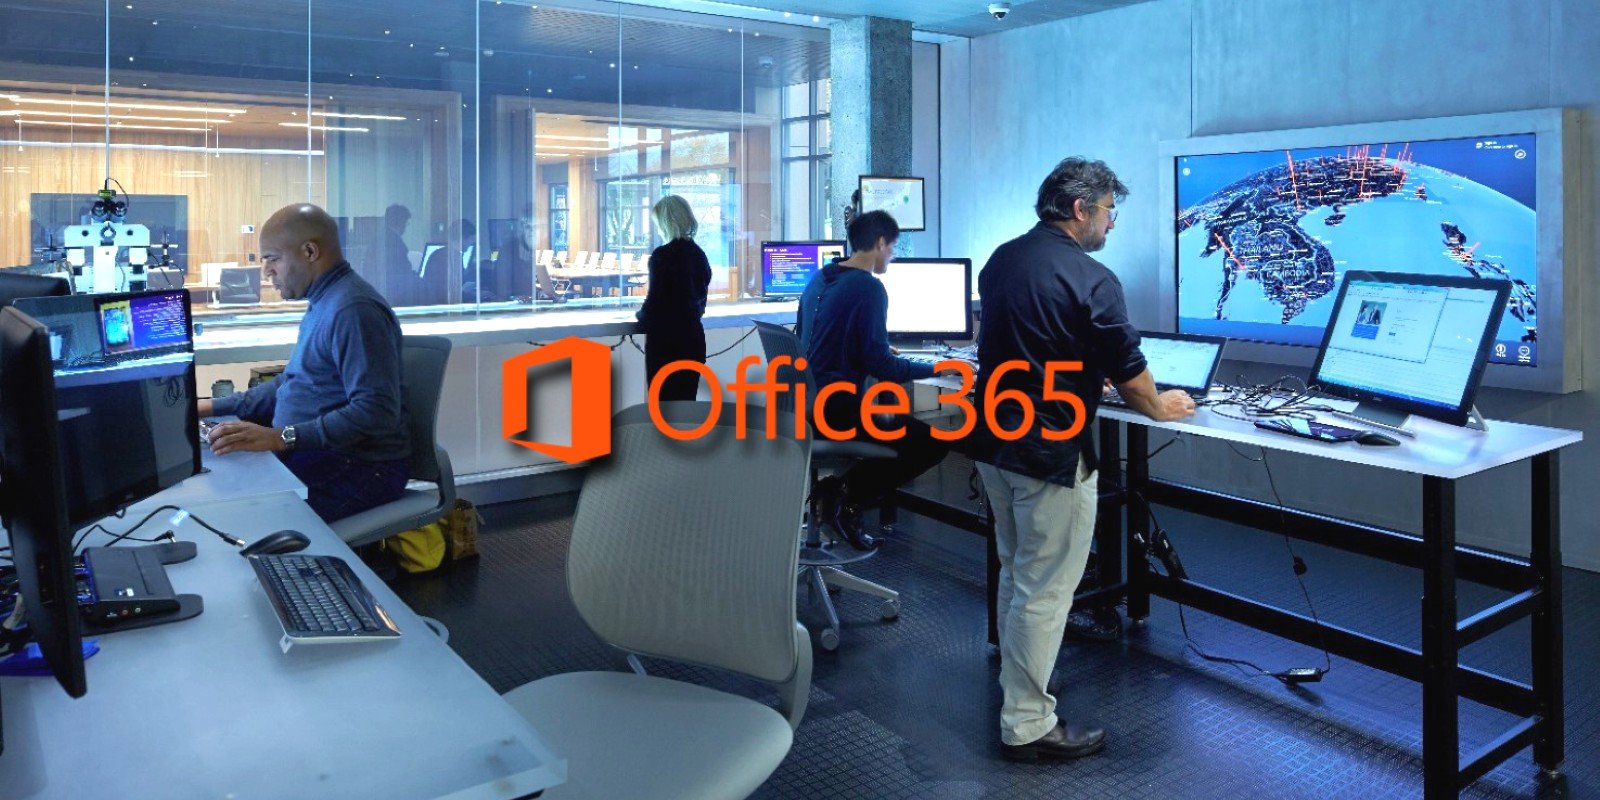 La línea de base de seguridad de Office 365 agrega firma de macros, protección JScript